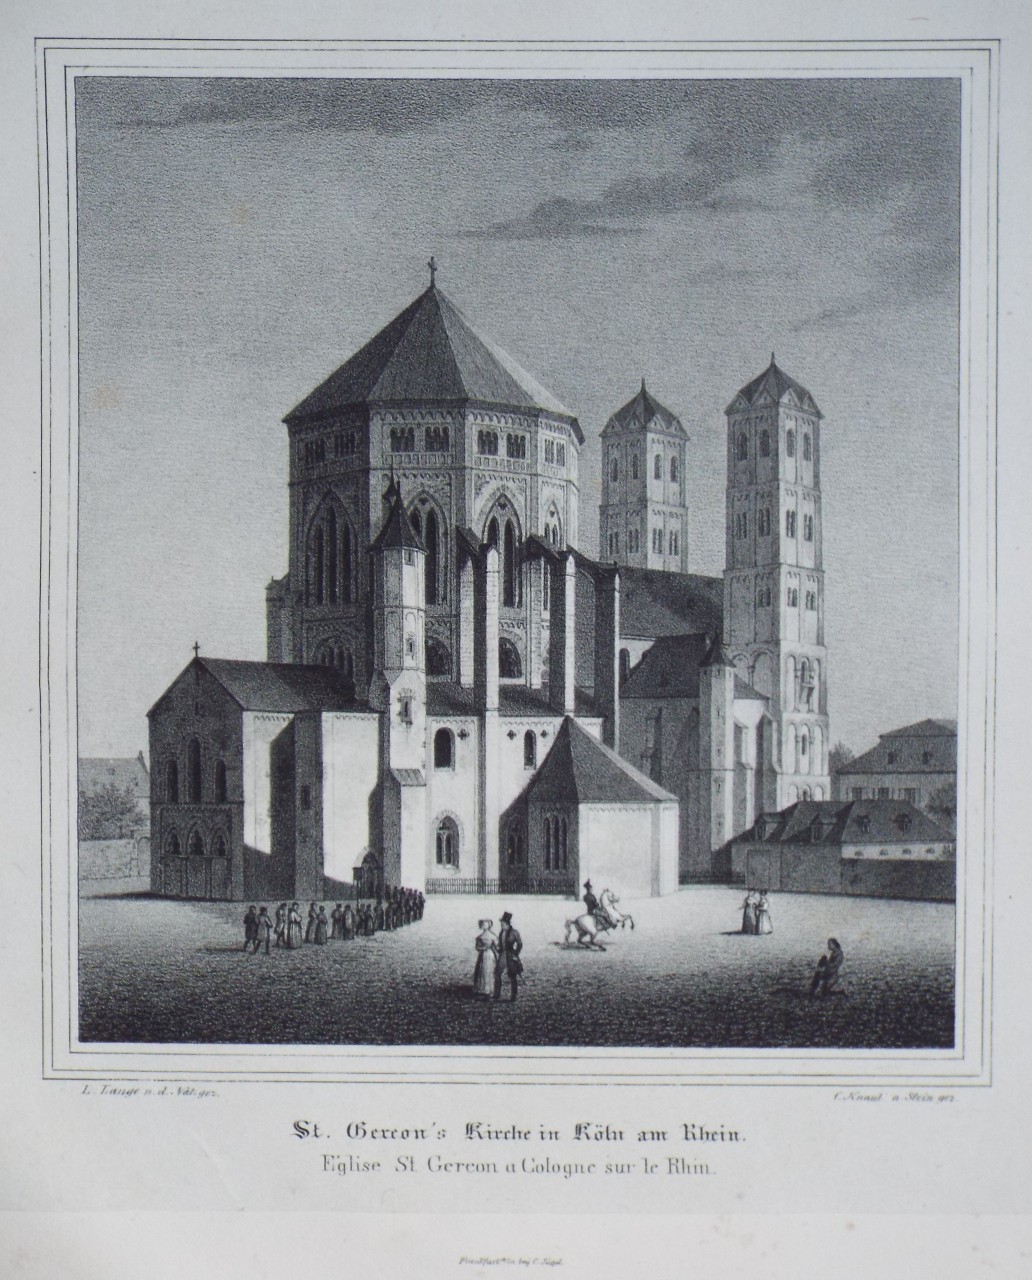 Lithograph - St. Gereon's Kirche in Koln am Rhein.
Eglise St Gereon a Cologne sur le Rhin. - Knauth